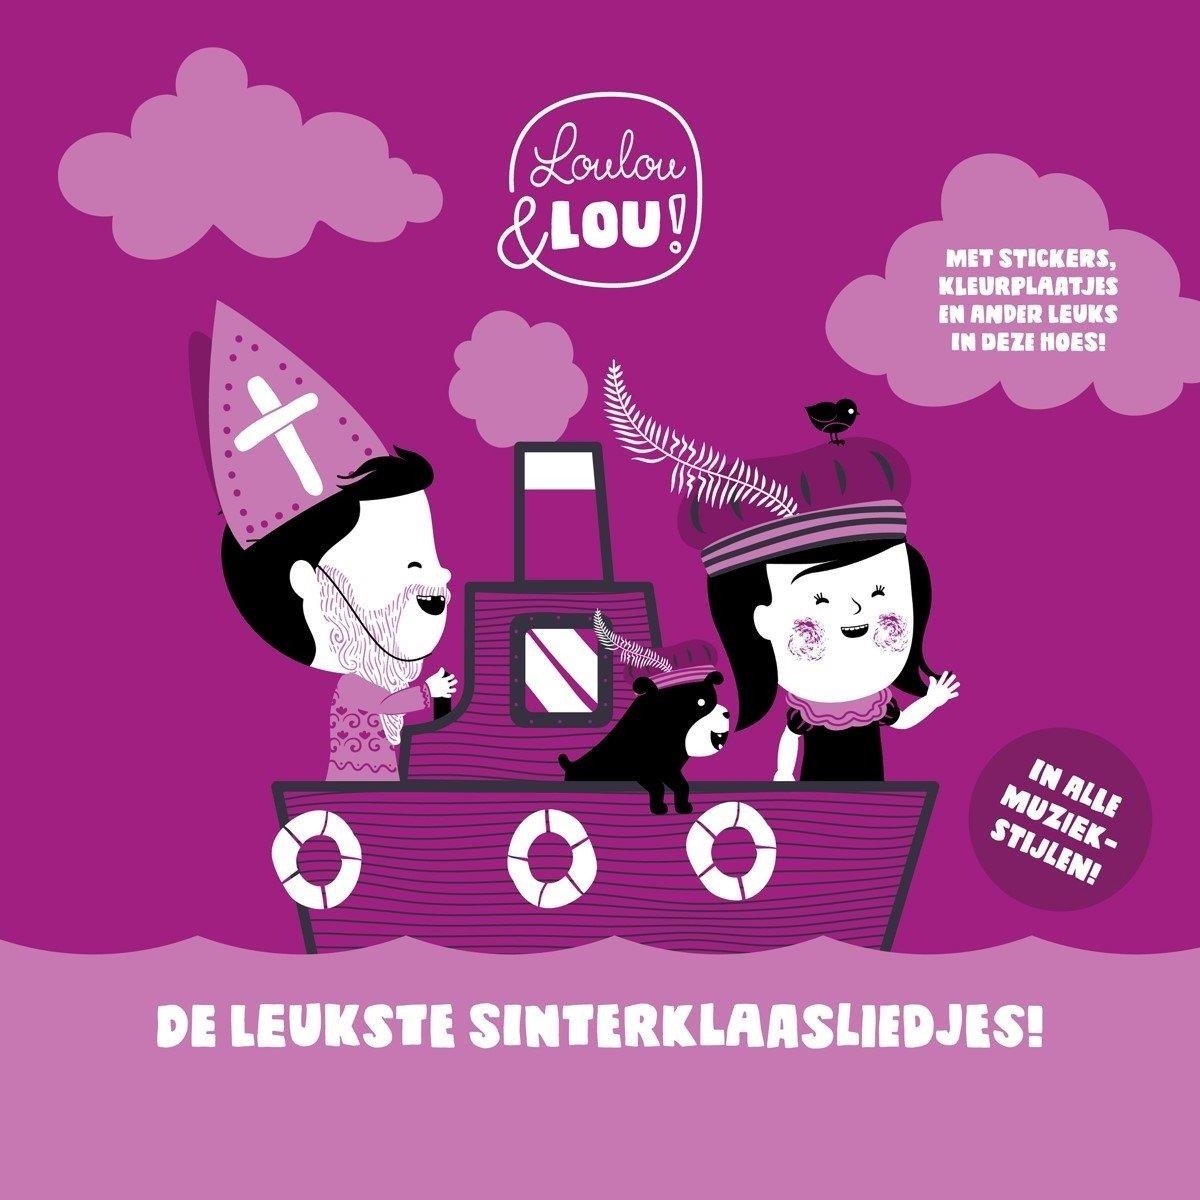 CD Shop - LOULOU & LOU! LEUKSTE SINTERKLAASLIEDJES!